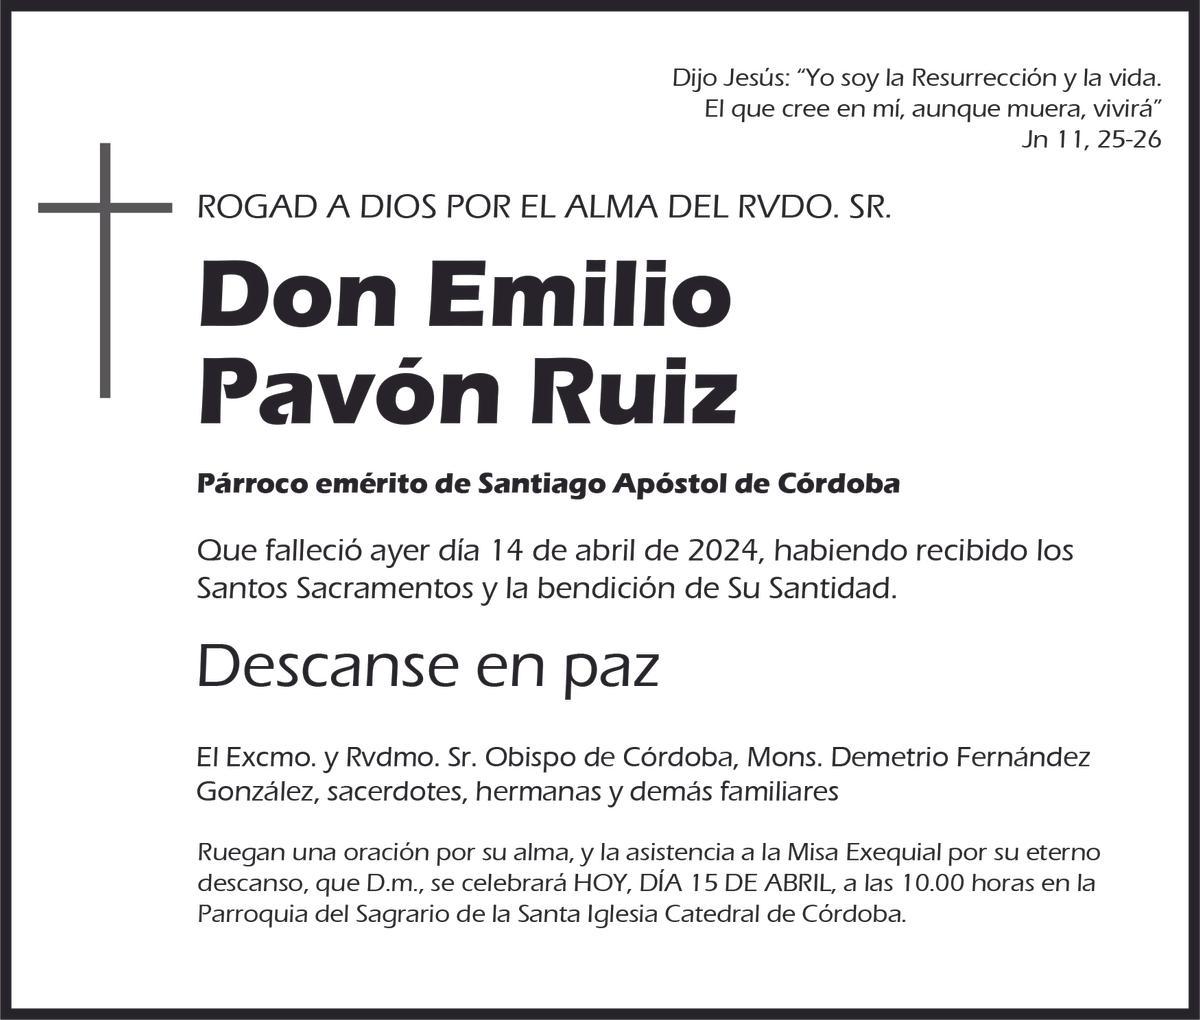 Emilio Pavón Ruiz